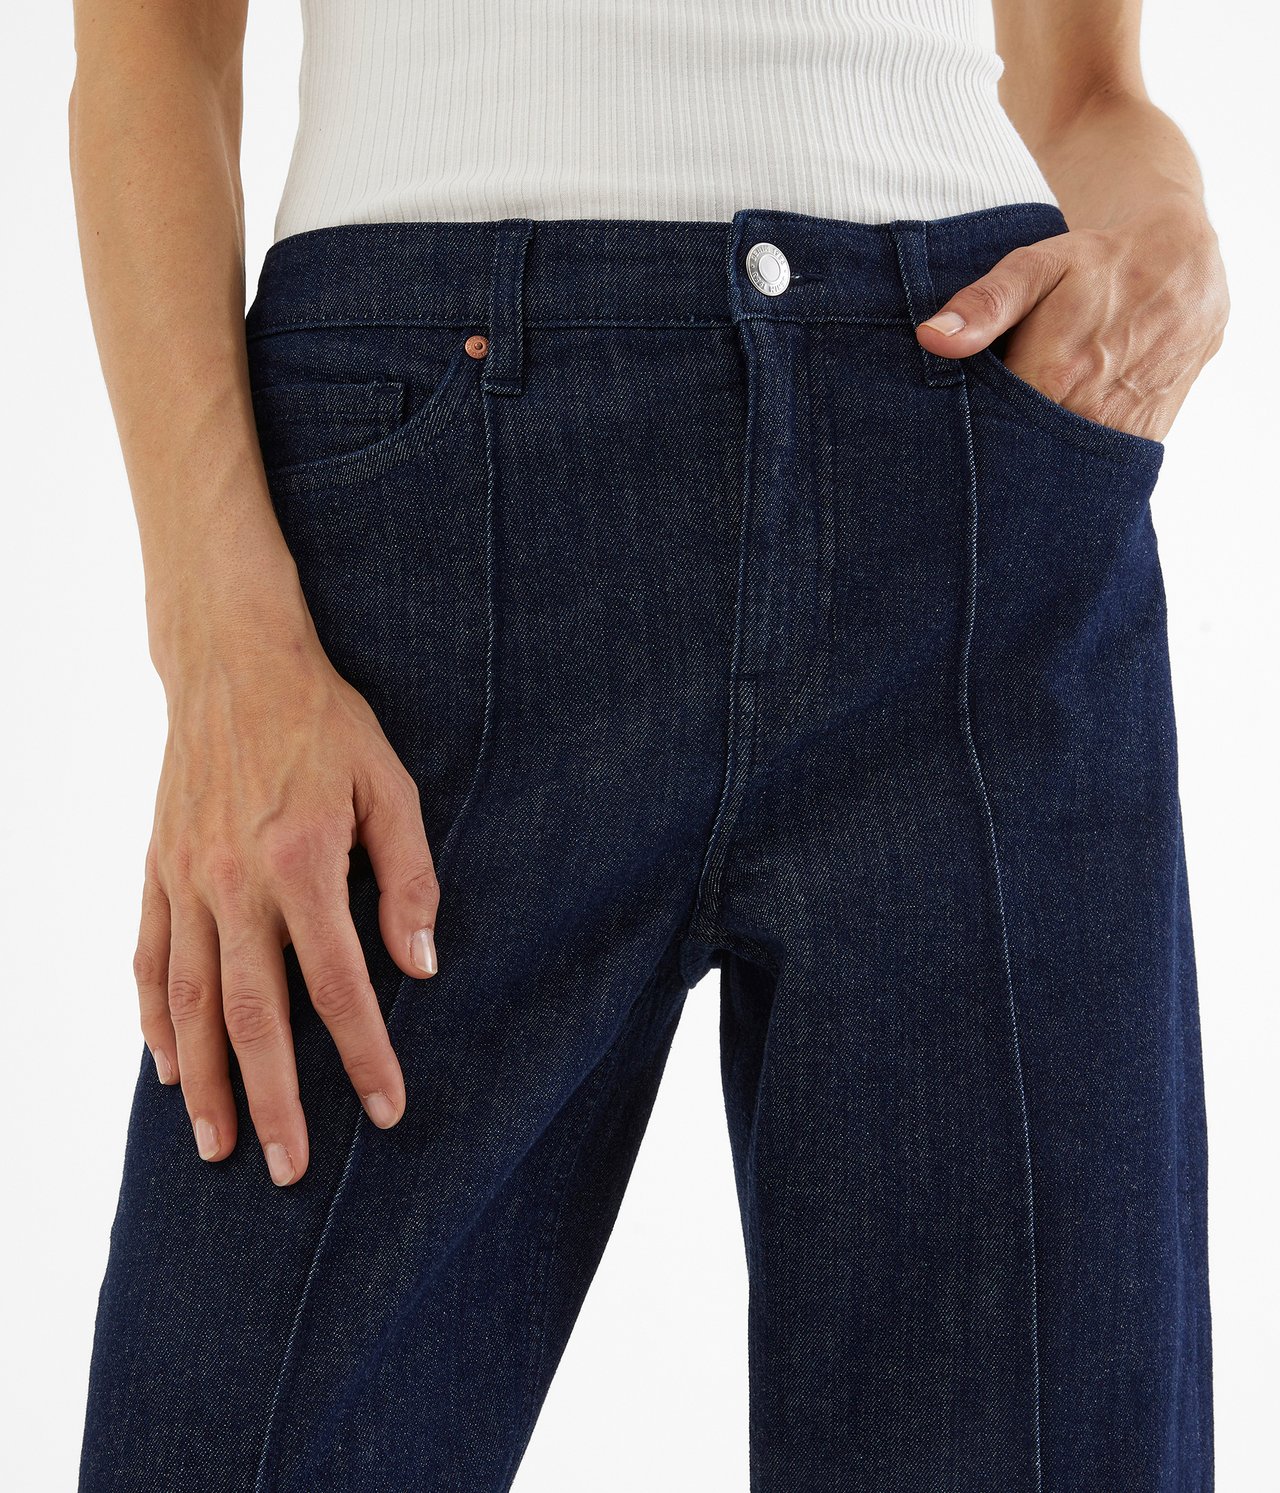 Jeans barrel fit - Tumma denimi - 3